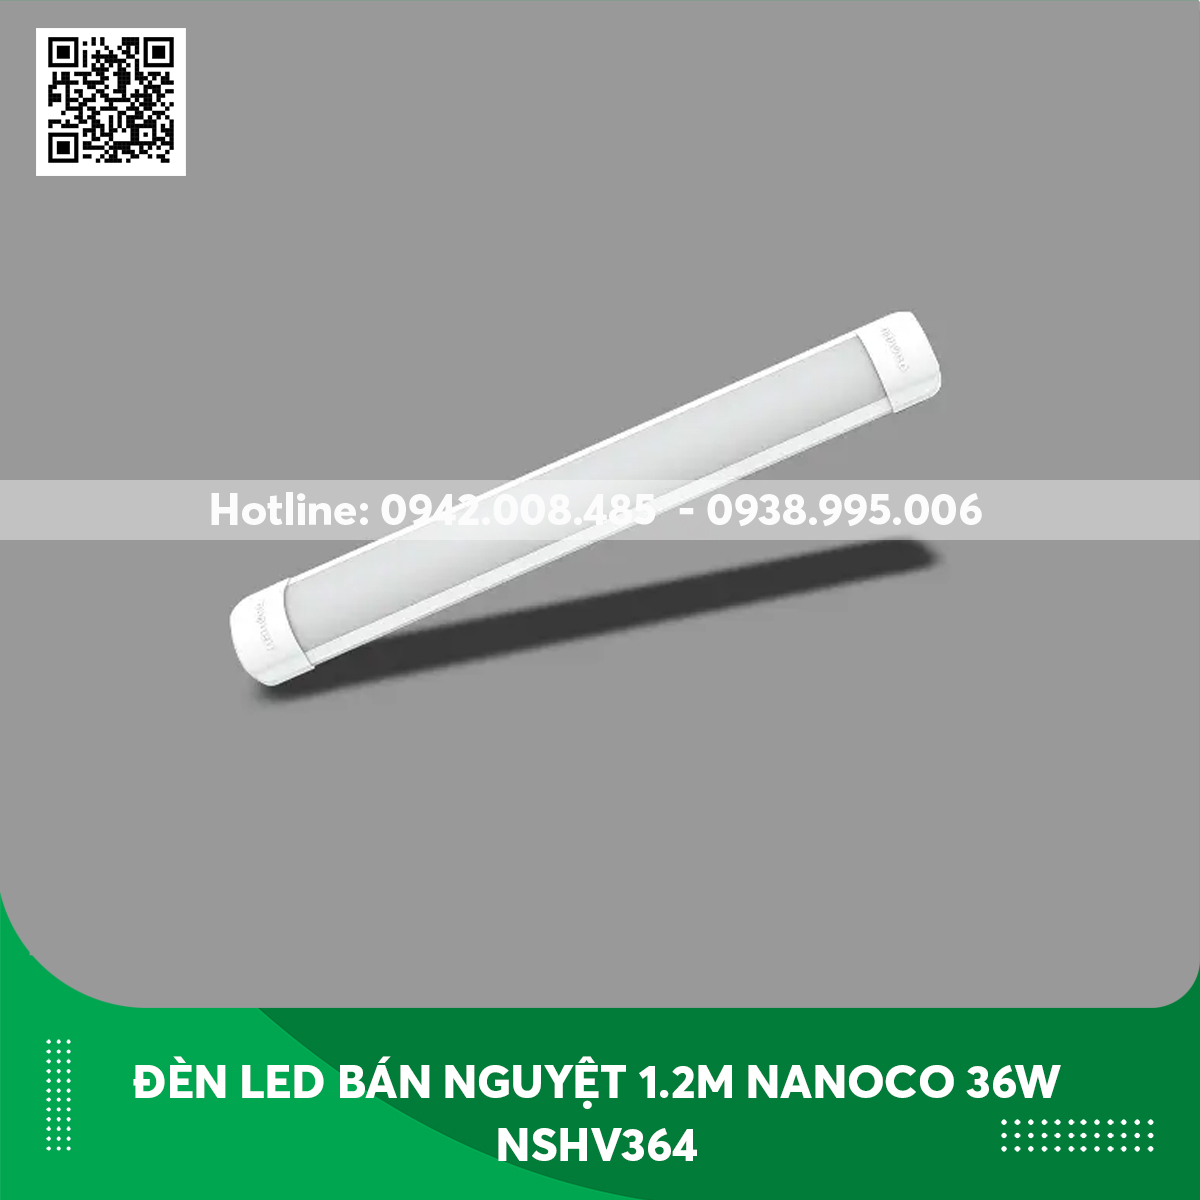 Đèn led bán nguyệt 1.2m Nanoco 36w NSHV364 thân trắng ánh sáng trung tính